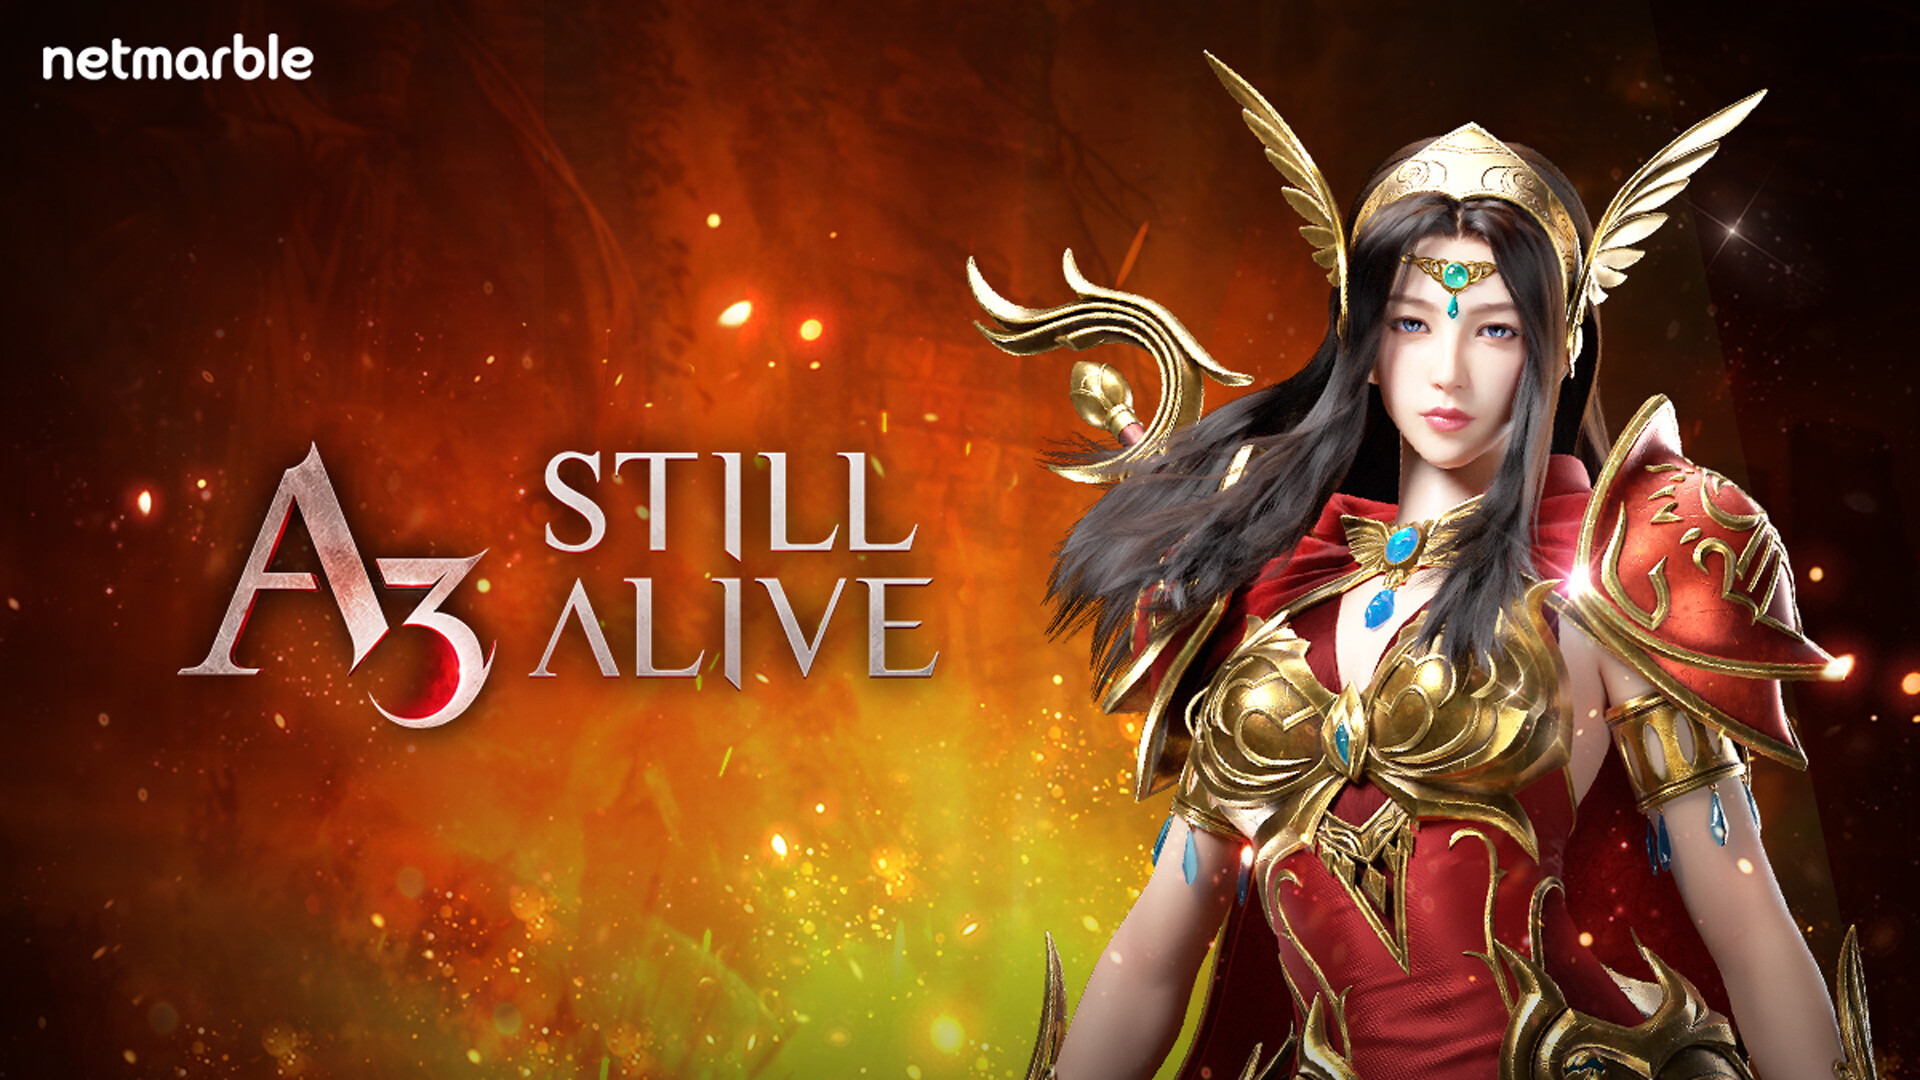 สุดยอดเกมเอาตัวรอด MMORPG 'A3: Still Alive' ฉลองเซิร์ฟเวอร์ใหม่  เพลิดเพลินไปกับหลากหลายกิจกรรมความสนุกได้แล้ววันนี้!